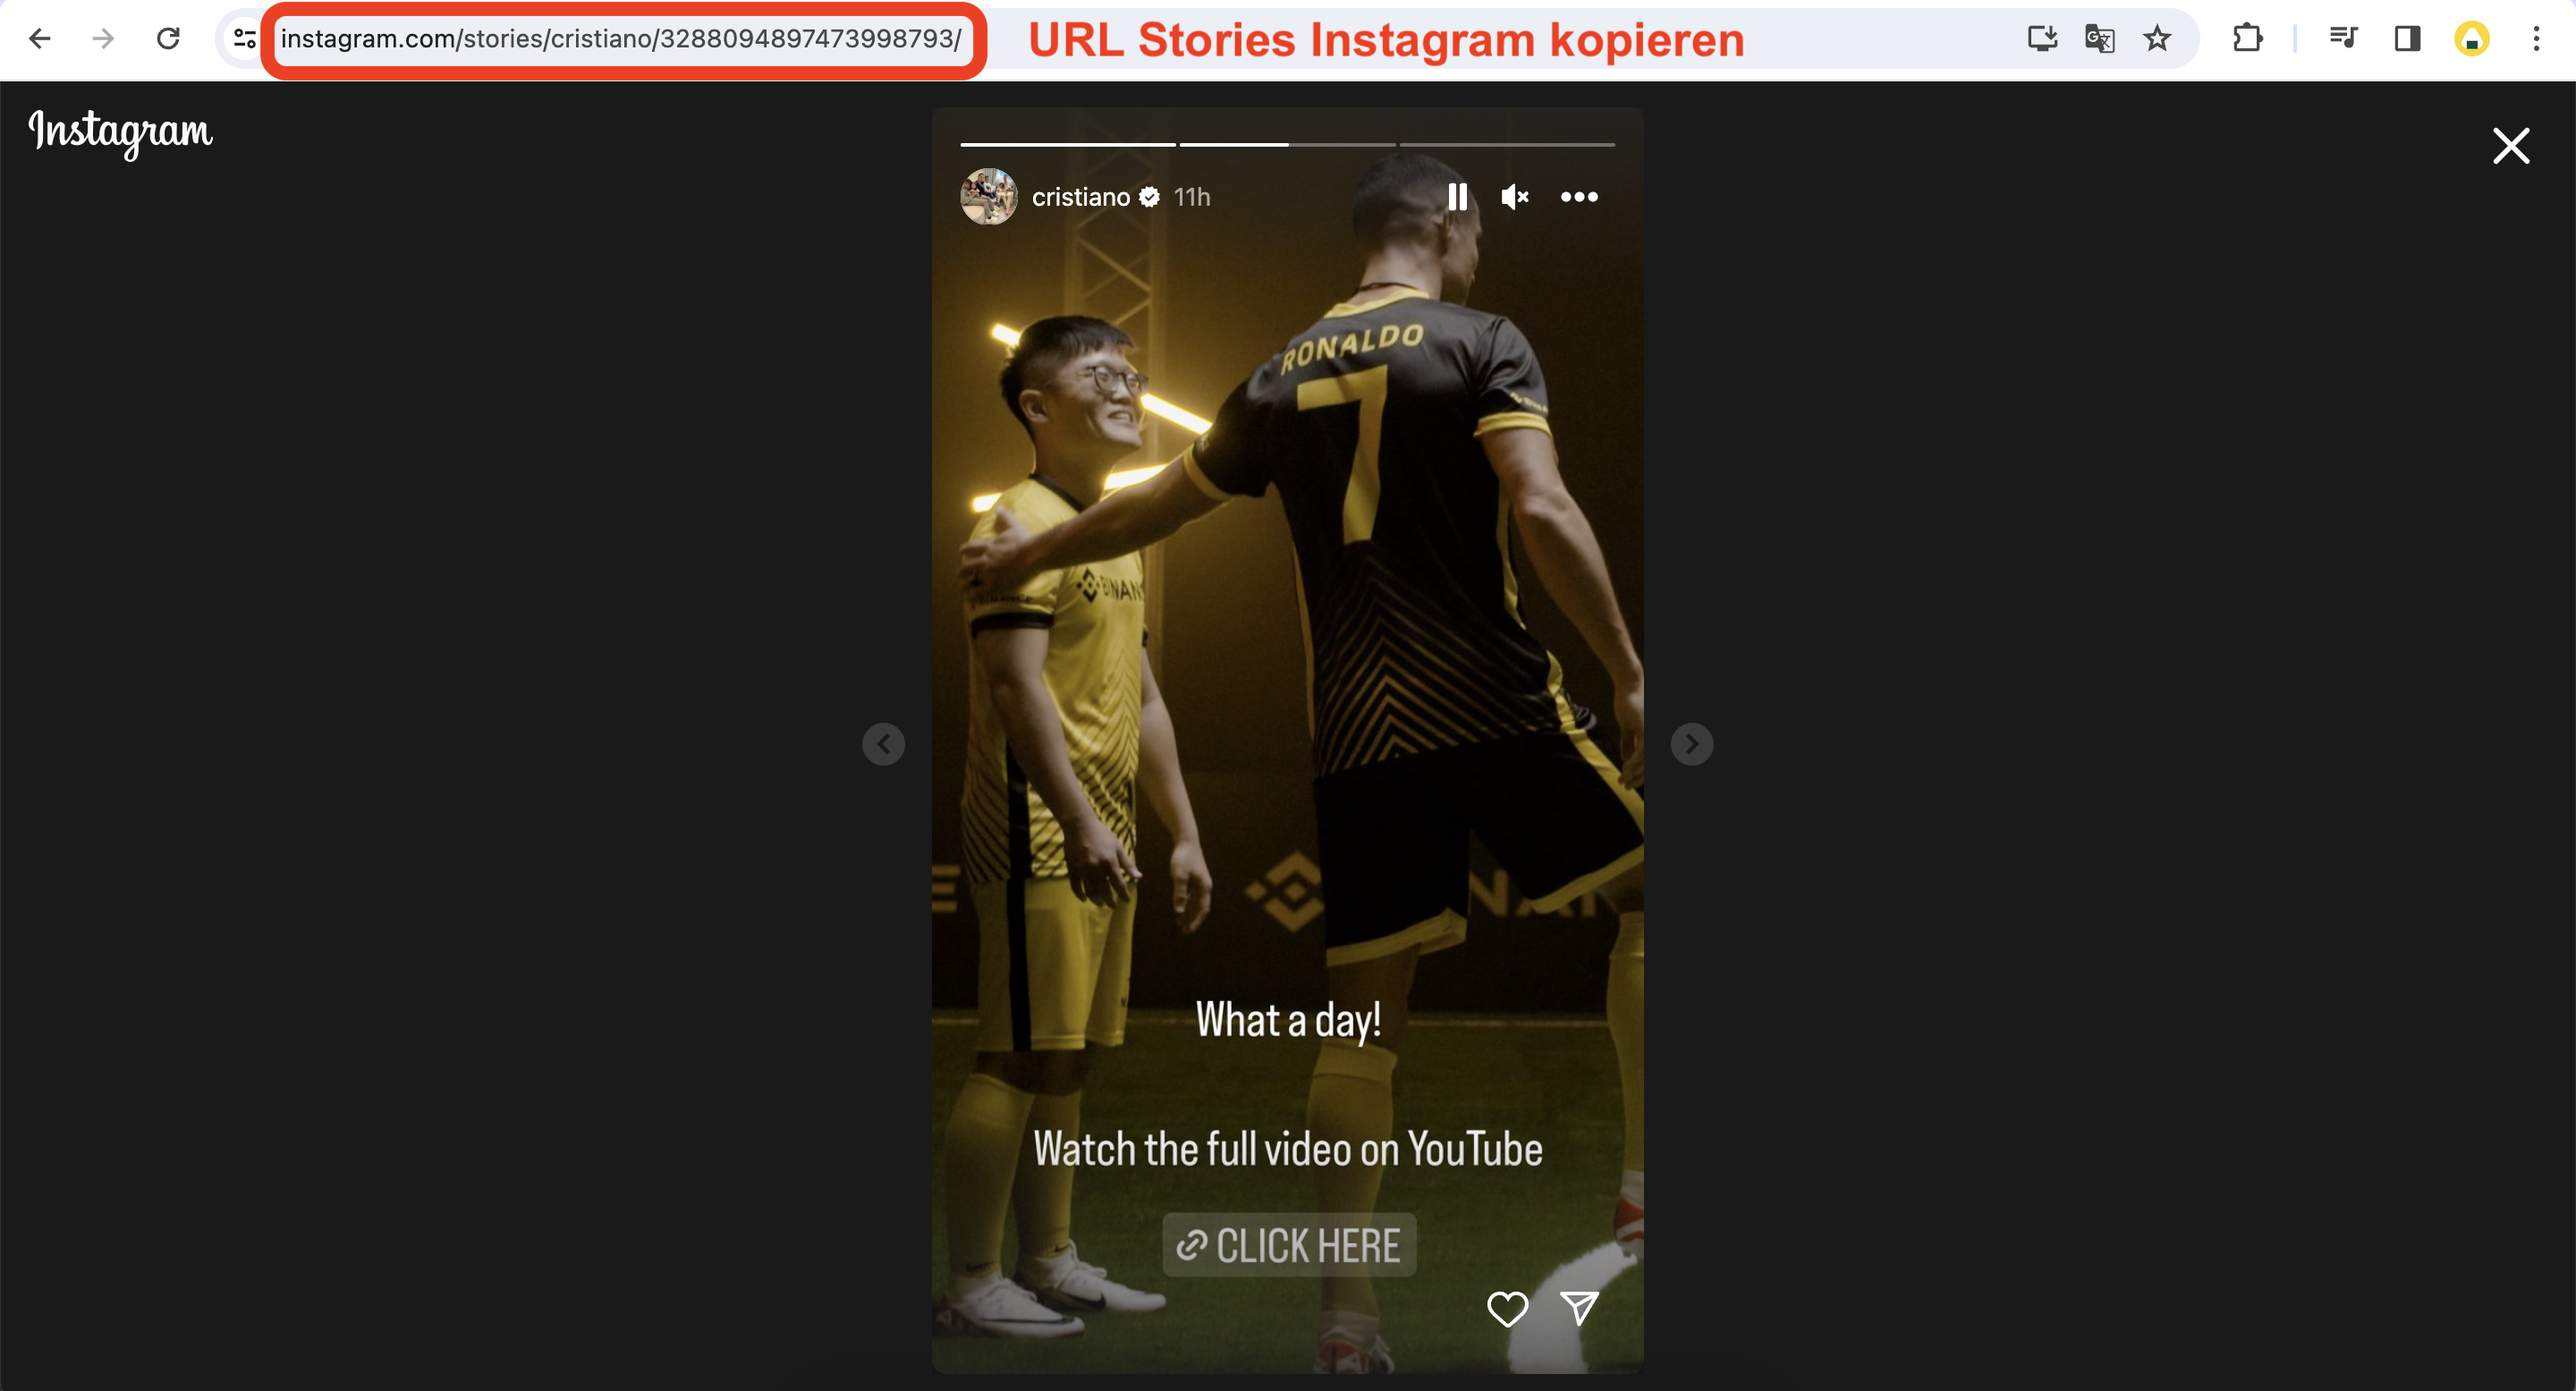 URL Stories Instagram kopieren